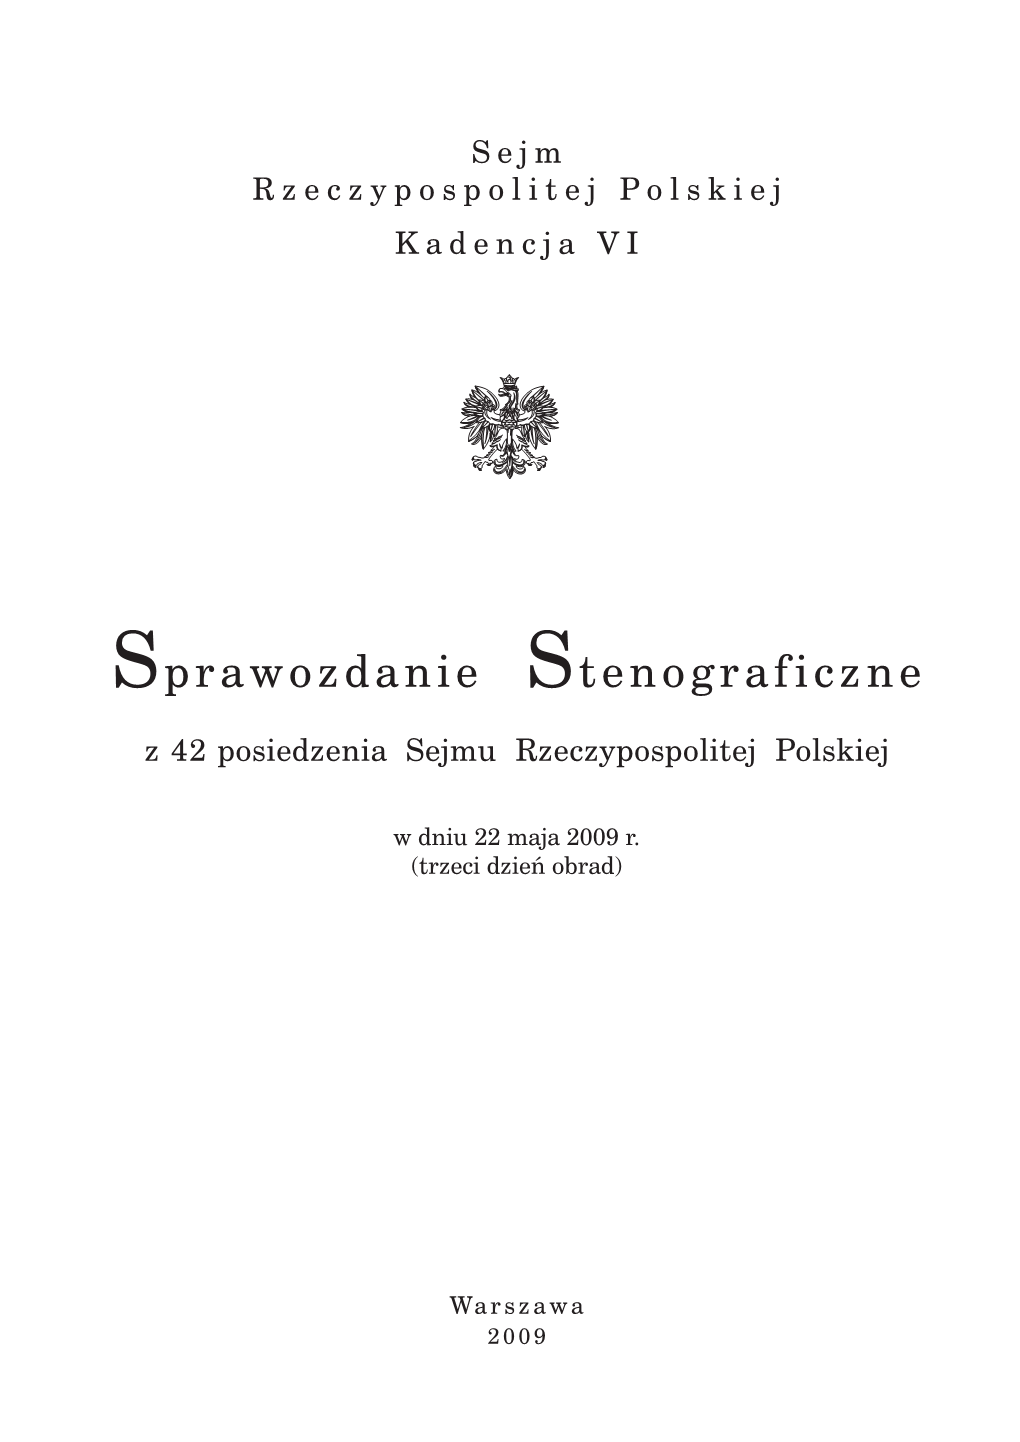 Sprawozdanie Stenograficzne Z 42 Posiedzenia Sejmu Rzeczypospolitej Polskiej